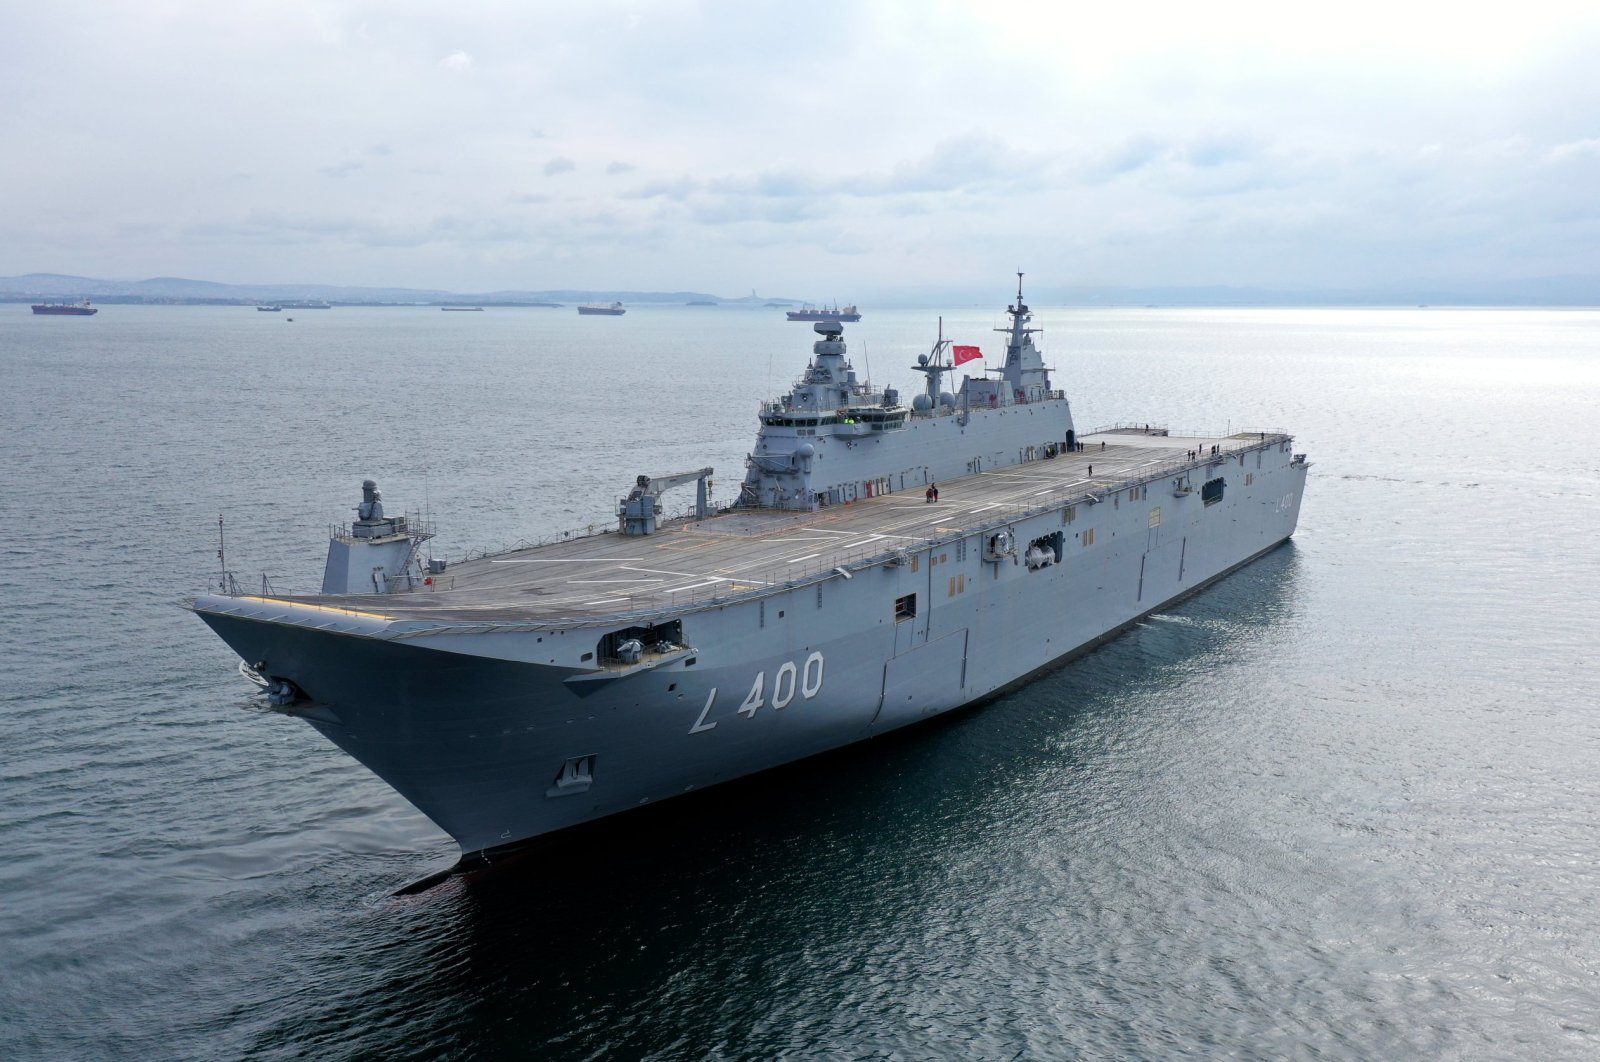 Calon unggulan Anadolu LHD memasuki inventaris Angkatan Laut Turki minggu depan